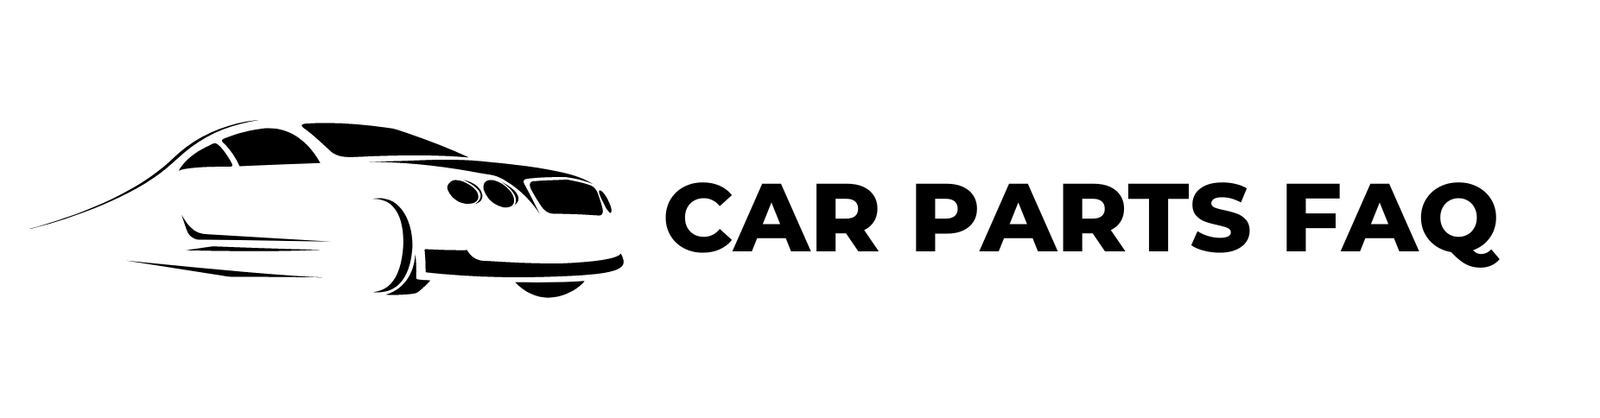 car parts faq logo